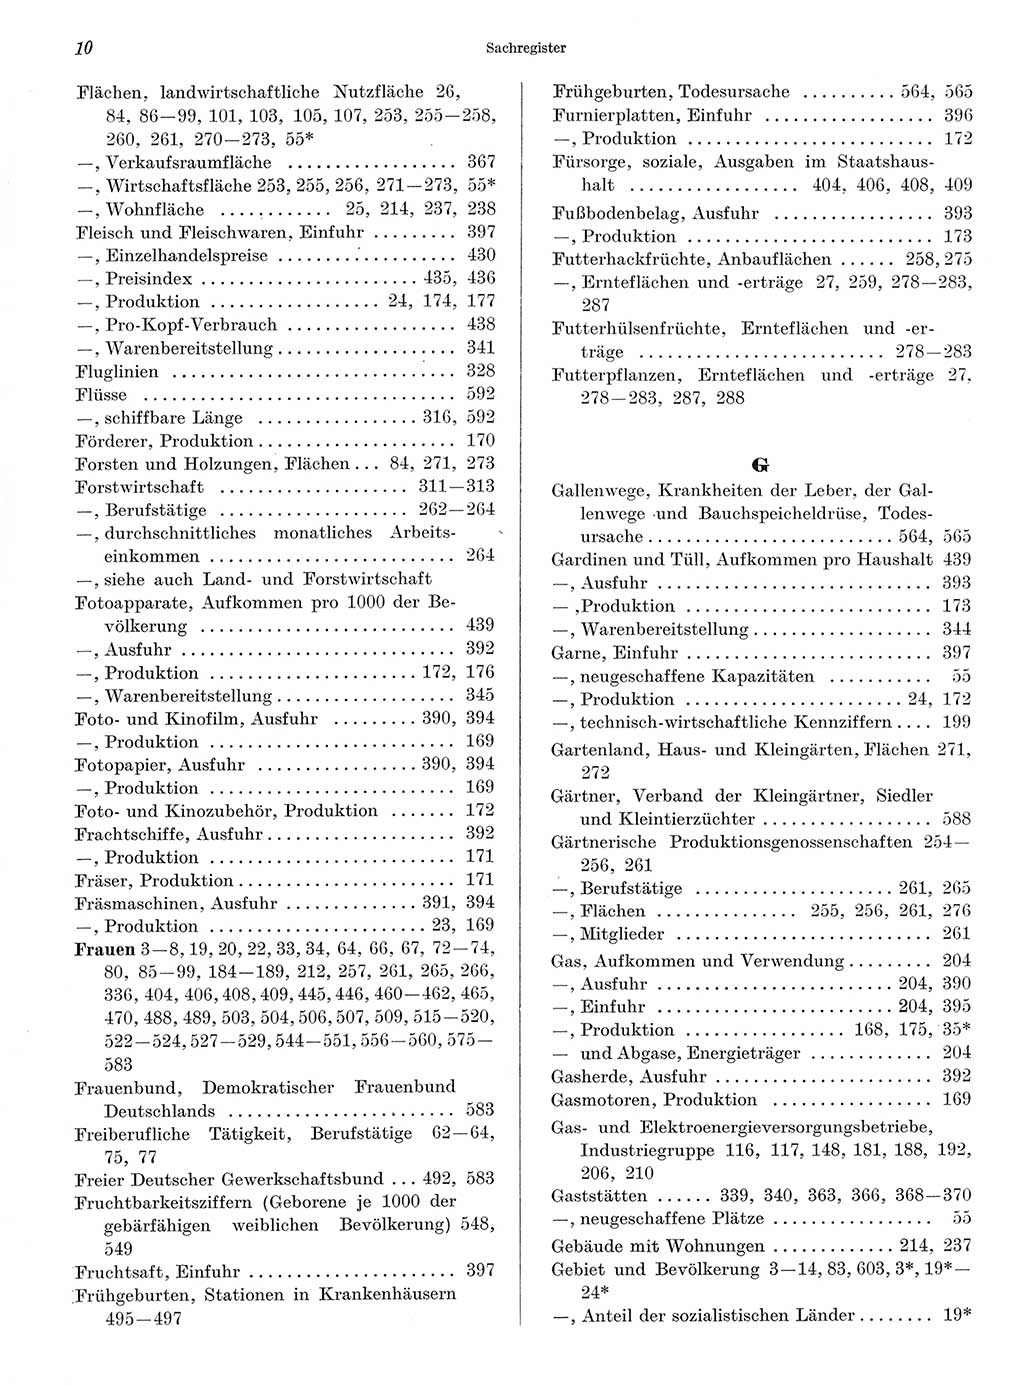 Statistisches Jahrbuch der Deutschen Demokratischen Republik (DDR) 1968, Seite 10 (Stat. Jb. DDR 1968, S. 10)